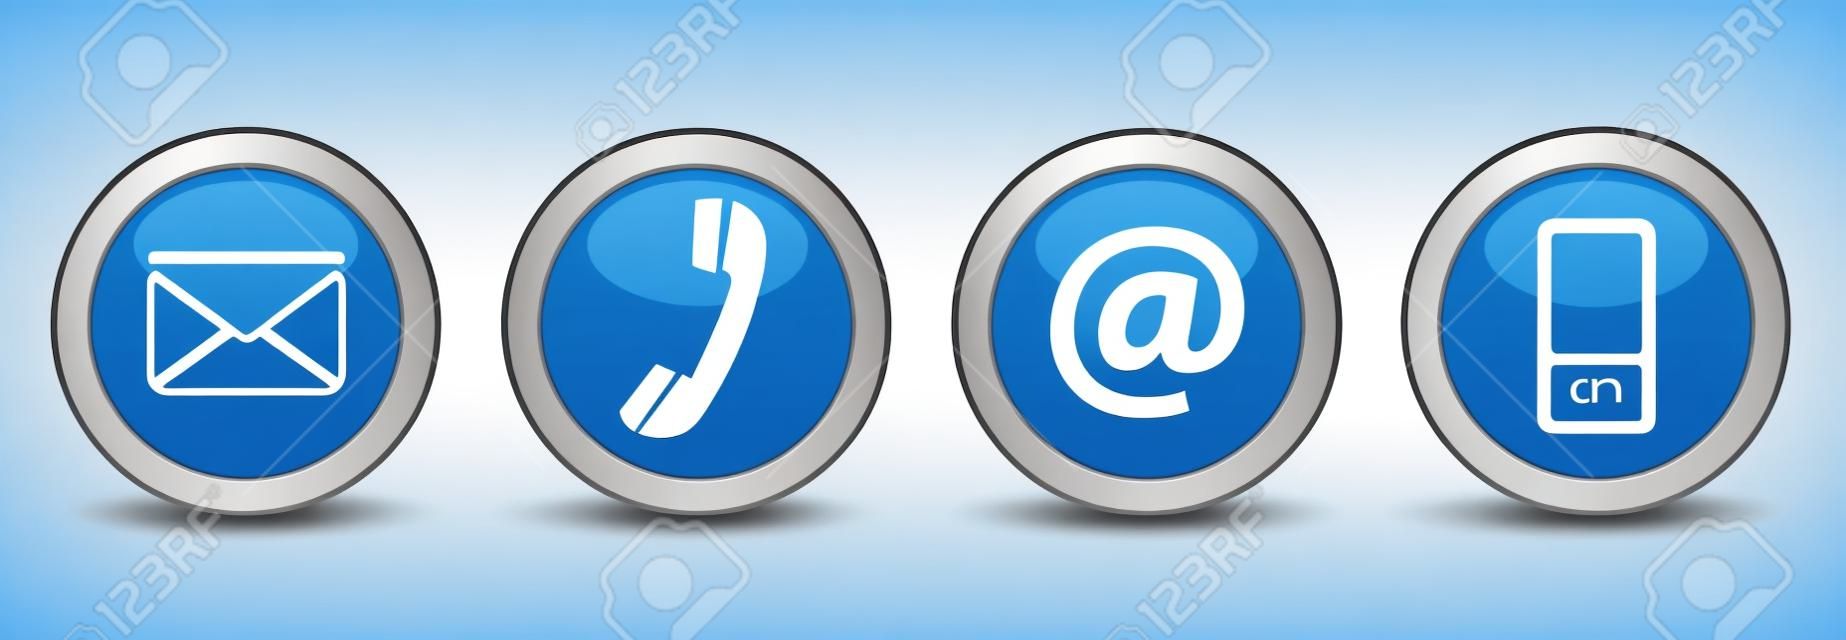 Связаться с нами веб-кнопок набор с электронной почтой, на, телефонной и мобильной иконы на синем вектора серебряный значок EPS 10 иллюстрации, изолированных на белом фоне.